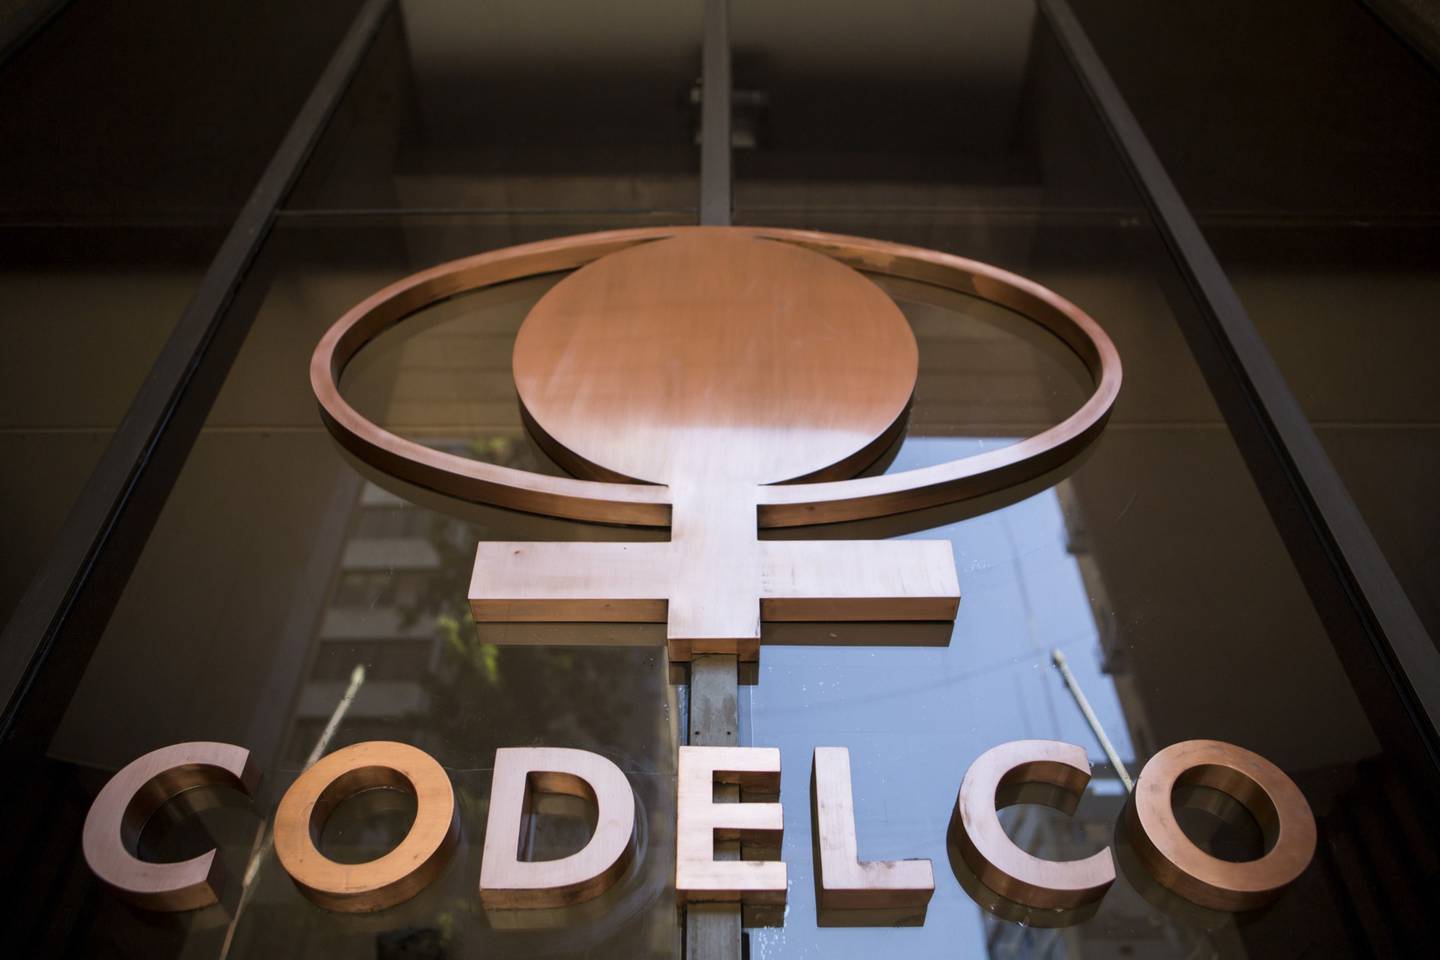 La estatal Codelco enfrenta varias negociaciones colectivas con trabajadores. Fotógrafo: Ronald Patrick/Bloombergdfd